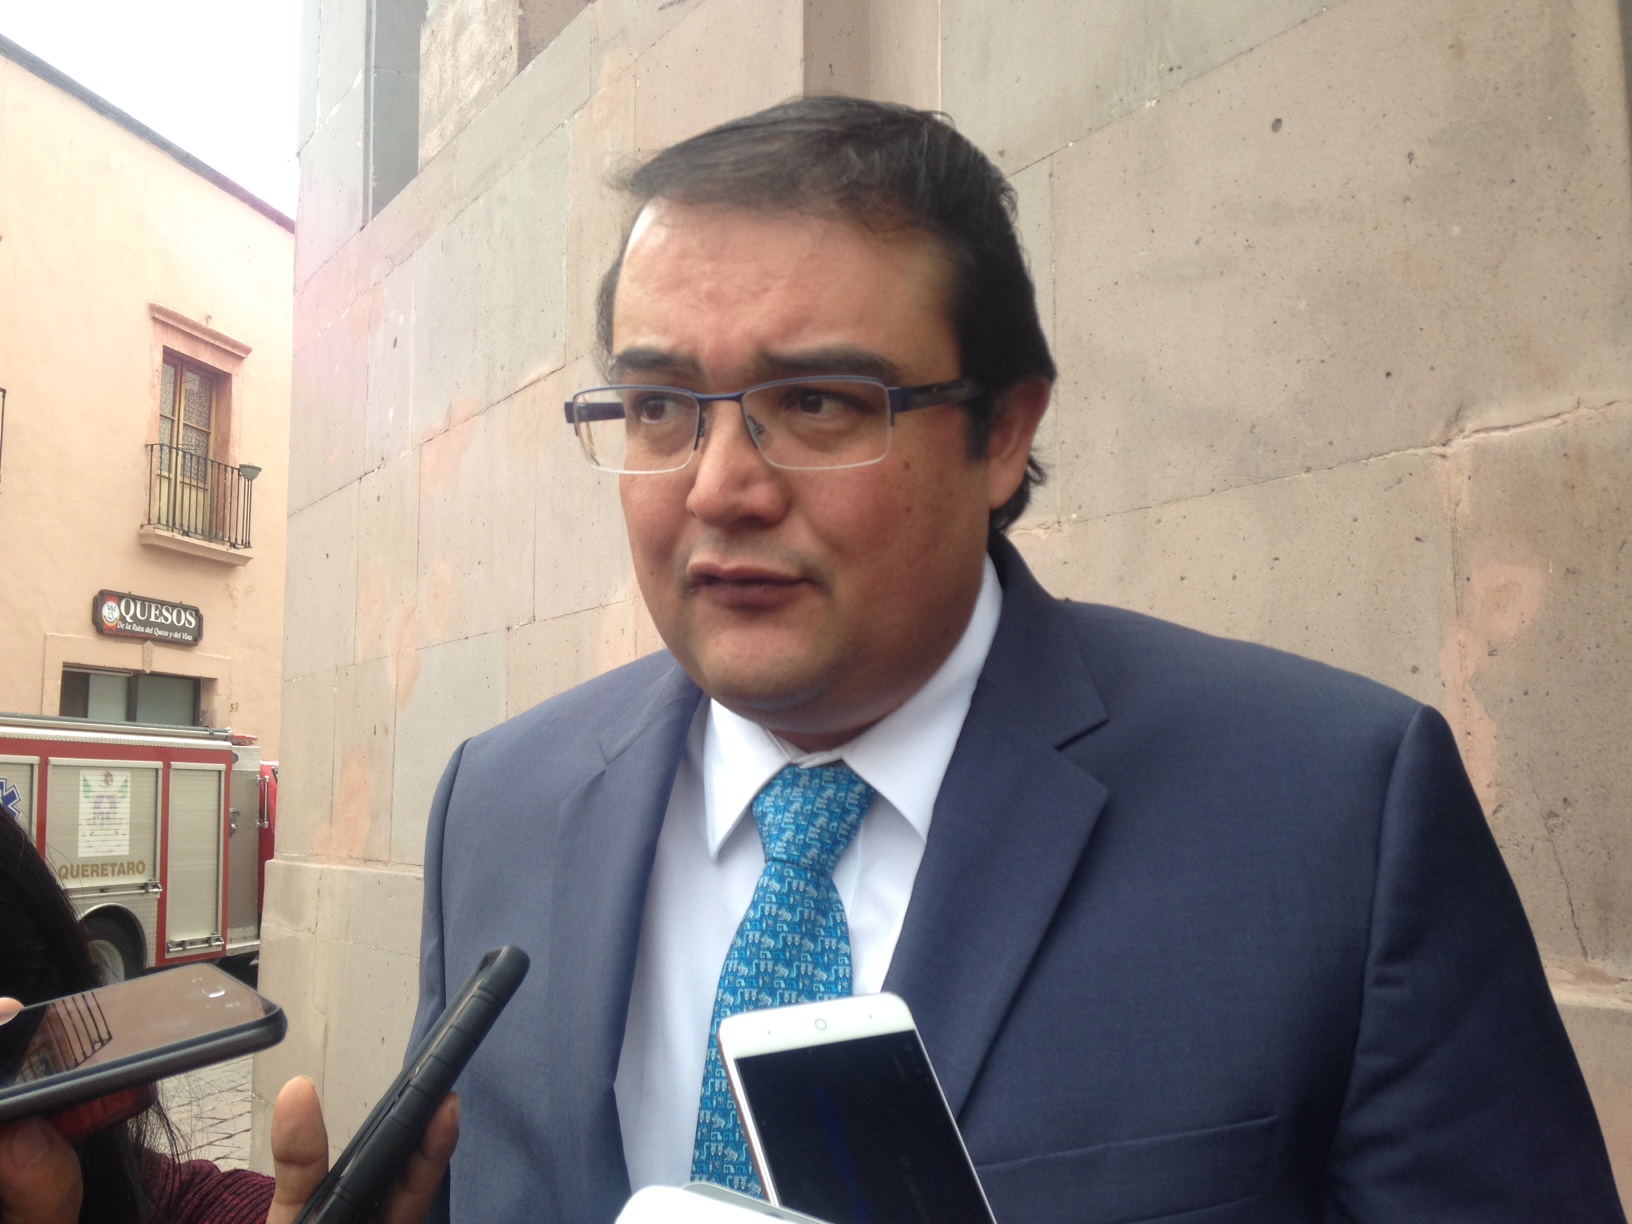  Iniciativa de Seguridad Privada tendrá que ser aprobada por el Poder Ejecutivo: Guillermo Vega